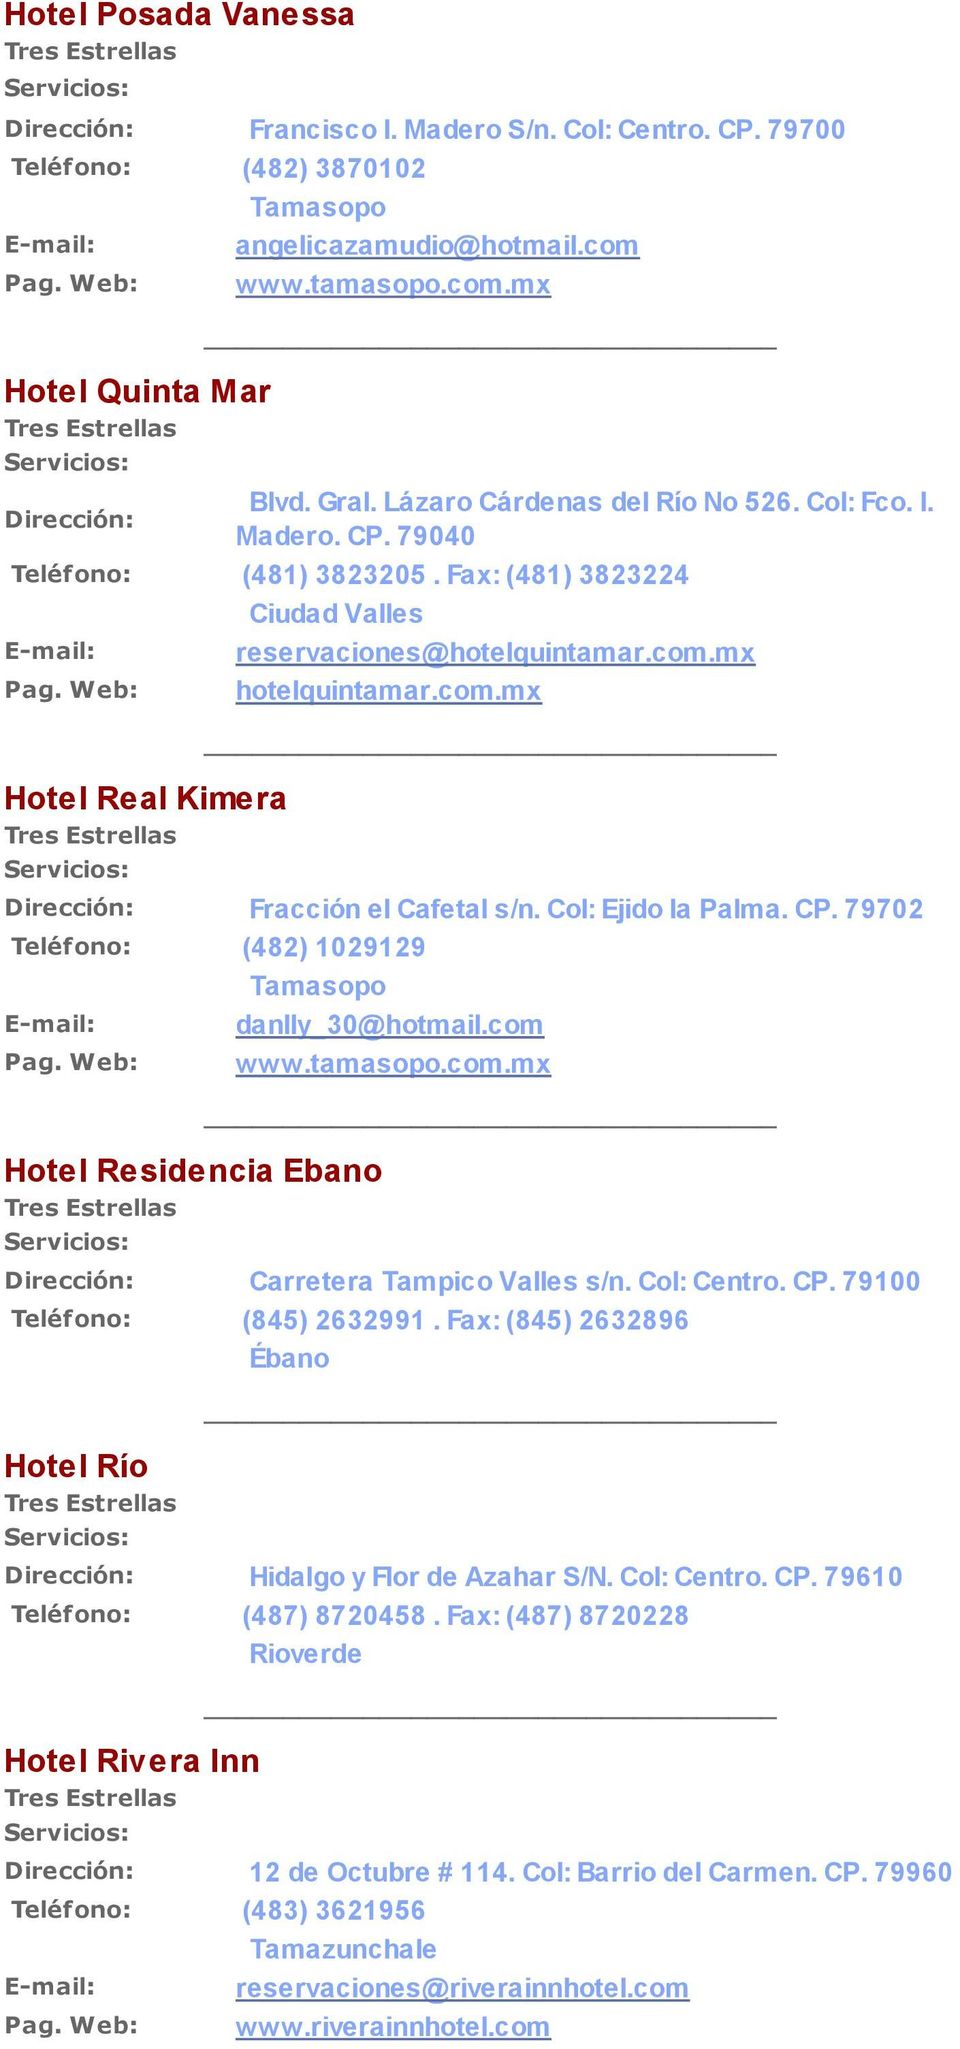 Col: Ejido la Palma. CP. 79702 Teléfono: (482) 1029129 danlly_30@hotmail.com www.tamasopo.com.mx Hotel Residencia Ebano Carretera Tampico Valles s/n. Col: Centro. CP. 79100 Teléfono: (845) 2632991.